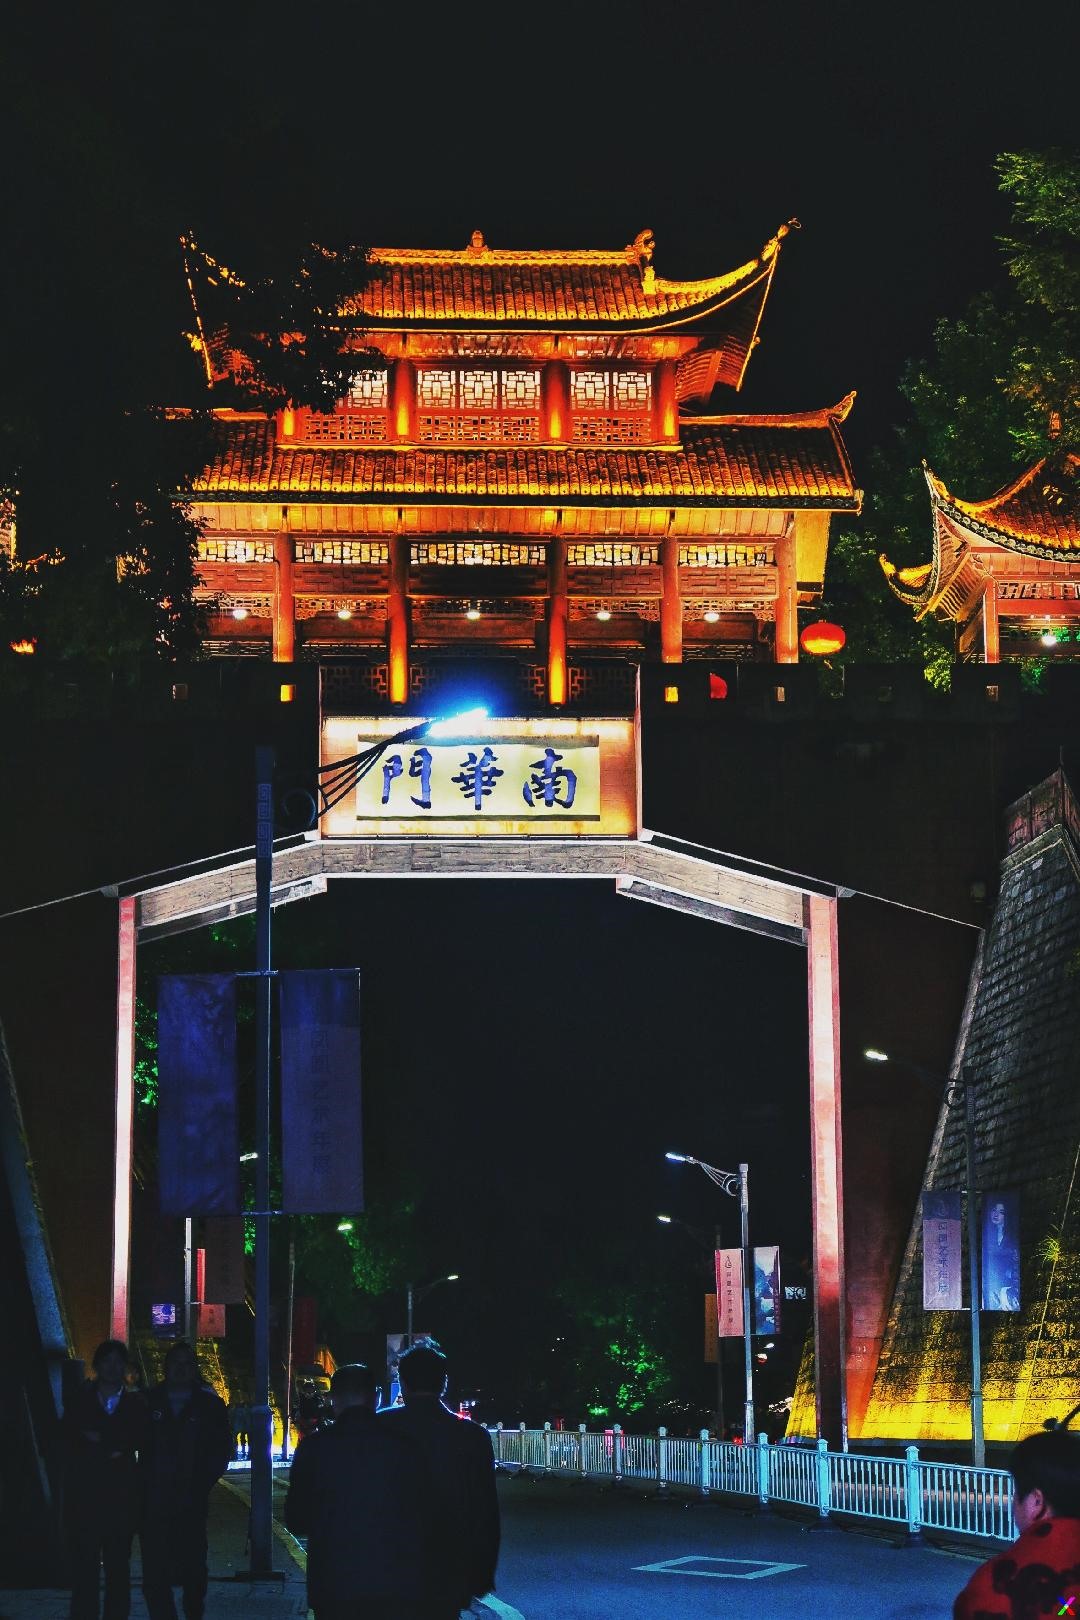 Bộ sưu tập đầy ảnh Trung Quốc về đêm, cực chất và sắc nét, hơn 999 hình ảnh toàn bộ 4K.